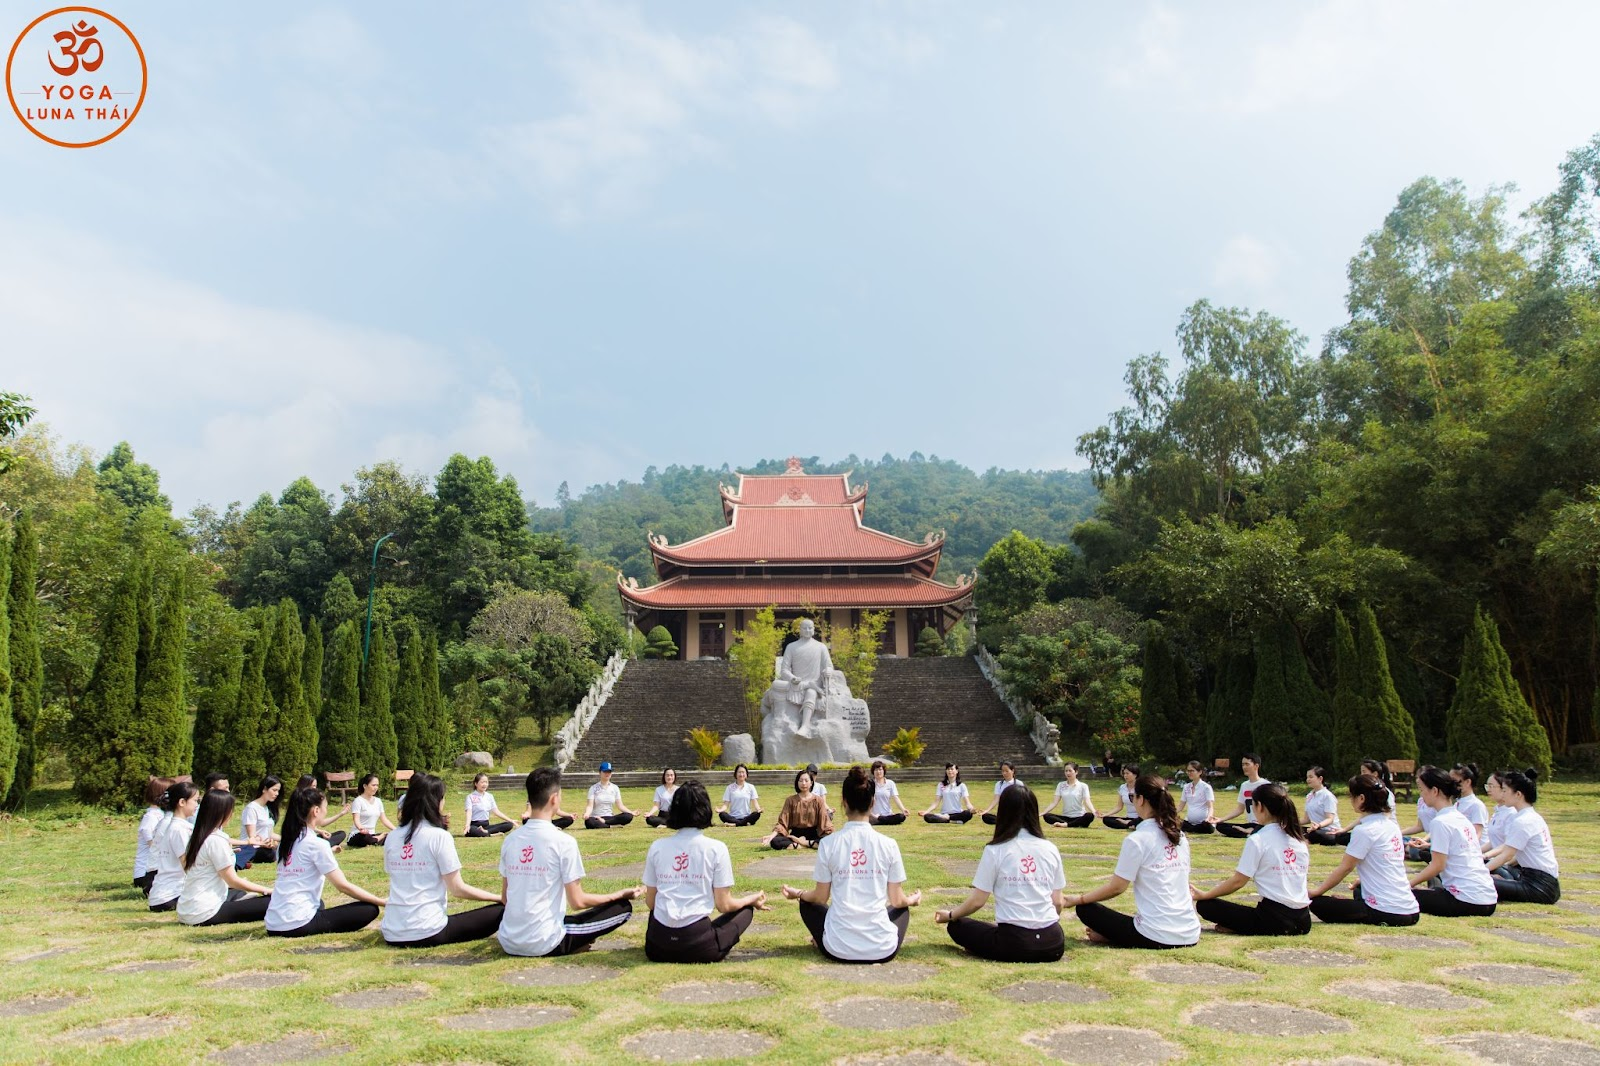 Hành trình chăm sóc sức khỏe cùng Yoga Luna Thái - TUBRR